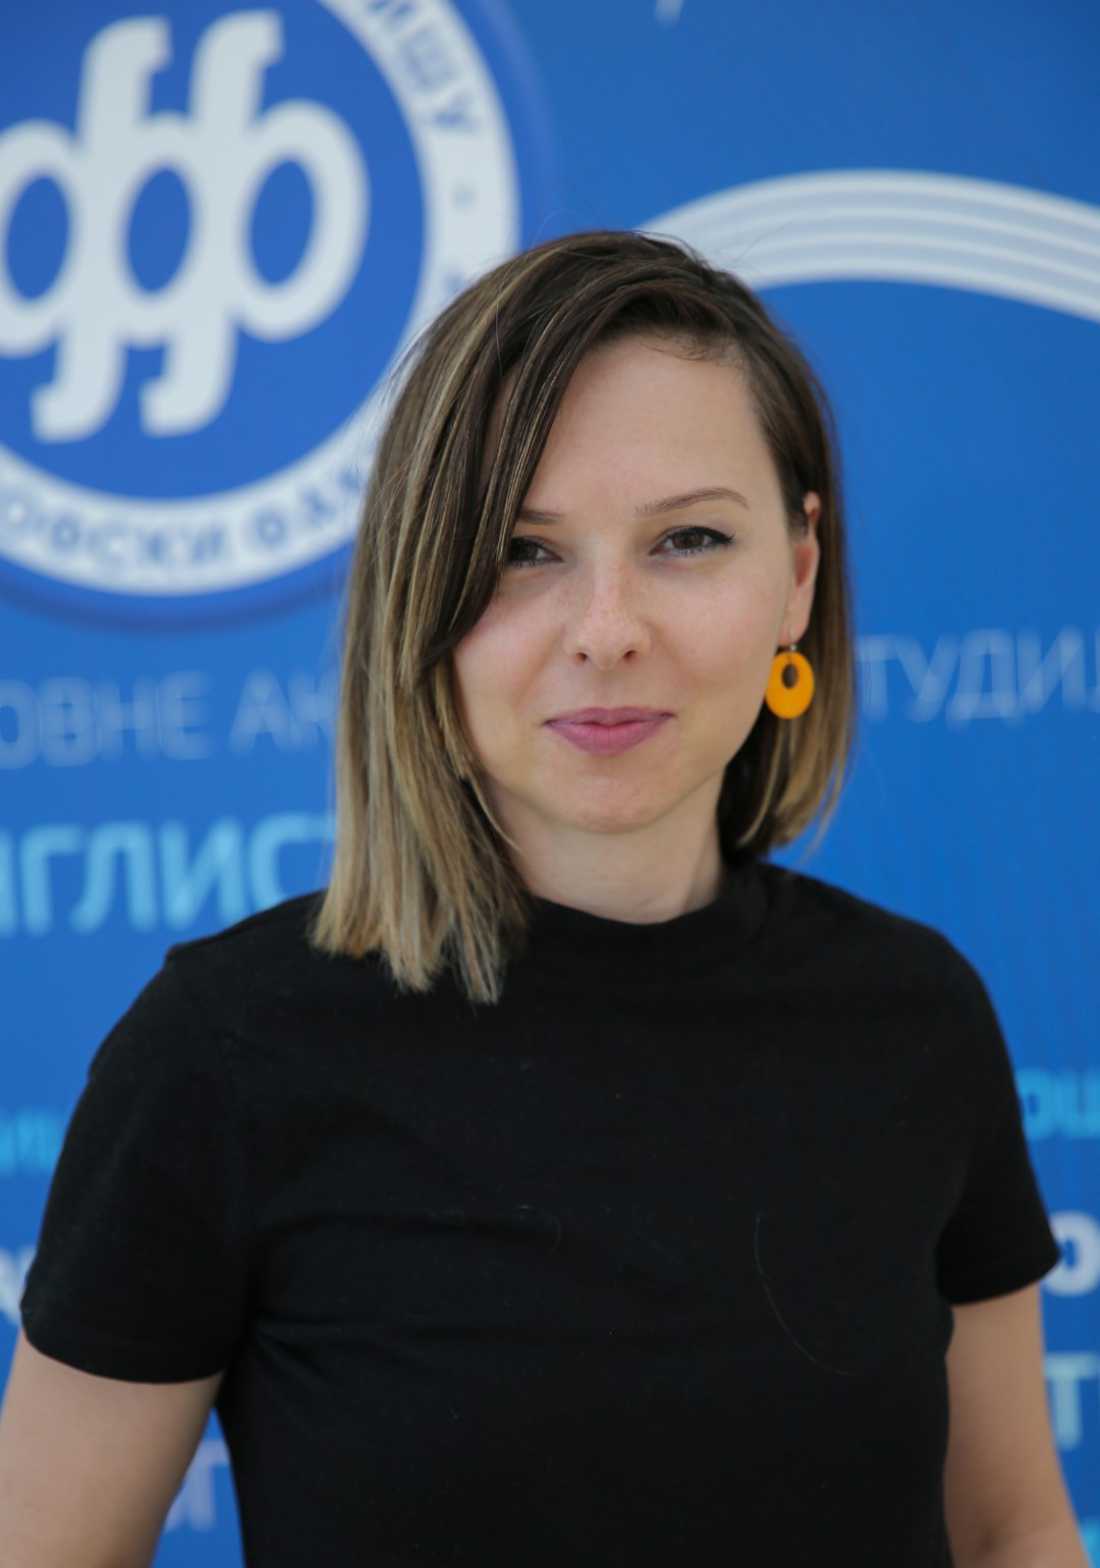 Јелена Божиловић, Департман за социологију, Филозофски факултет